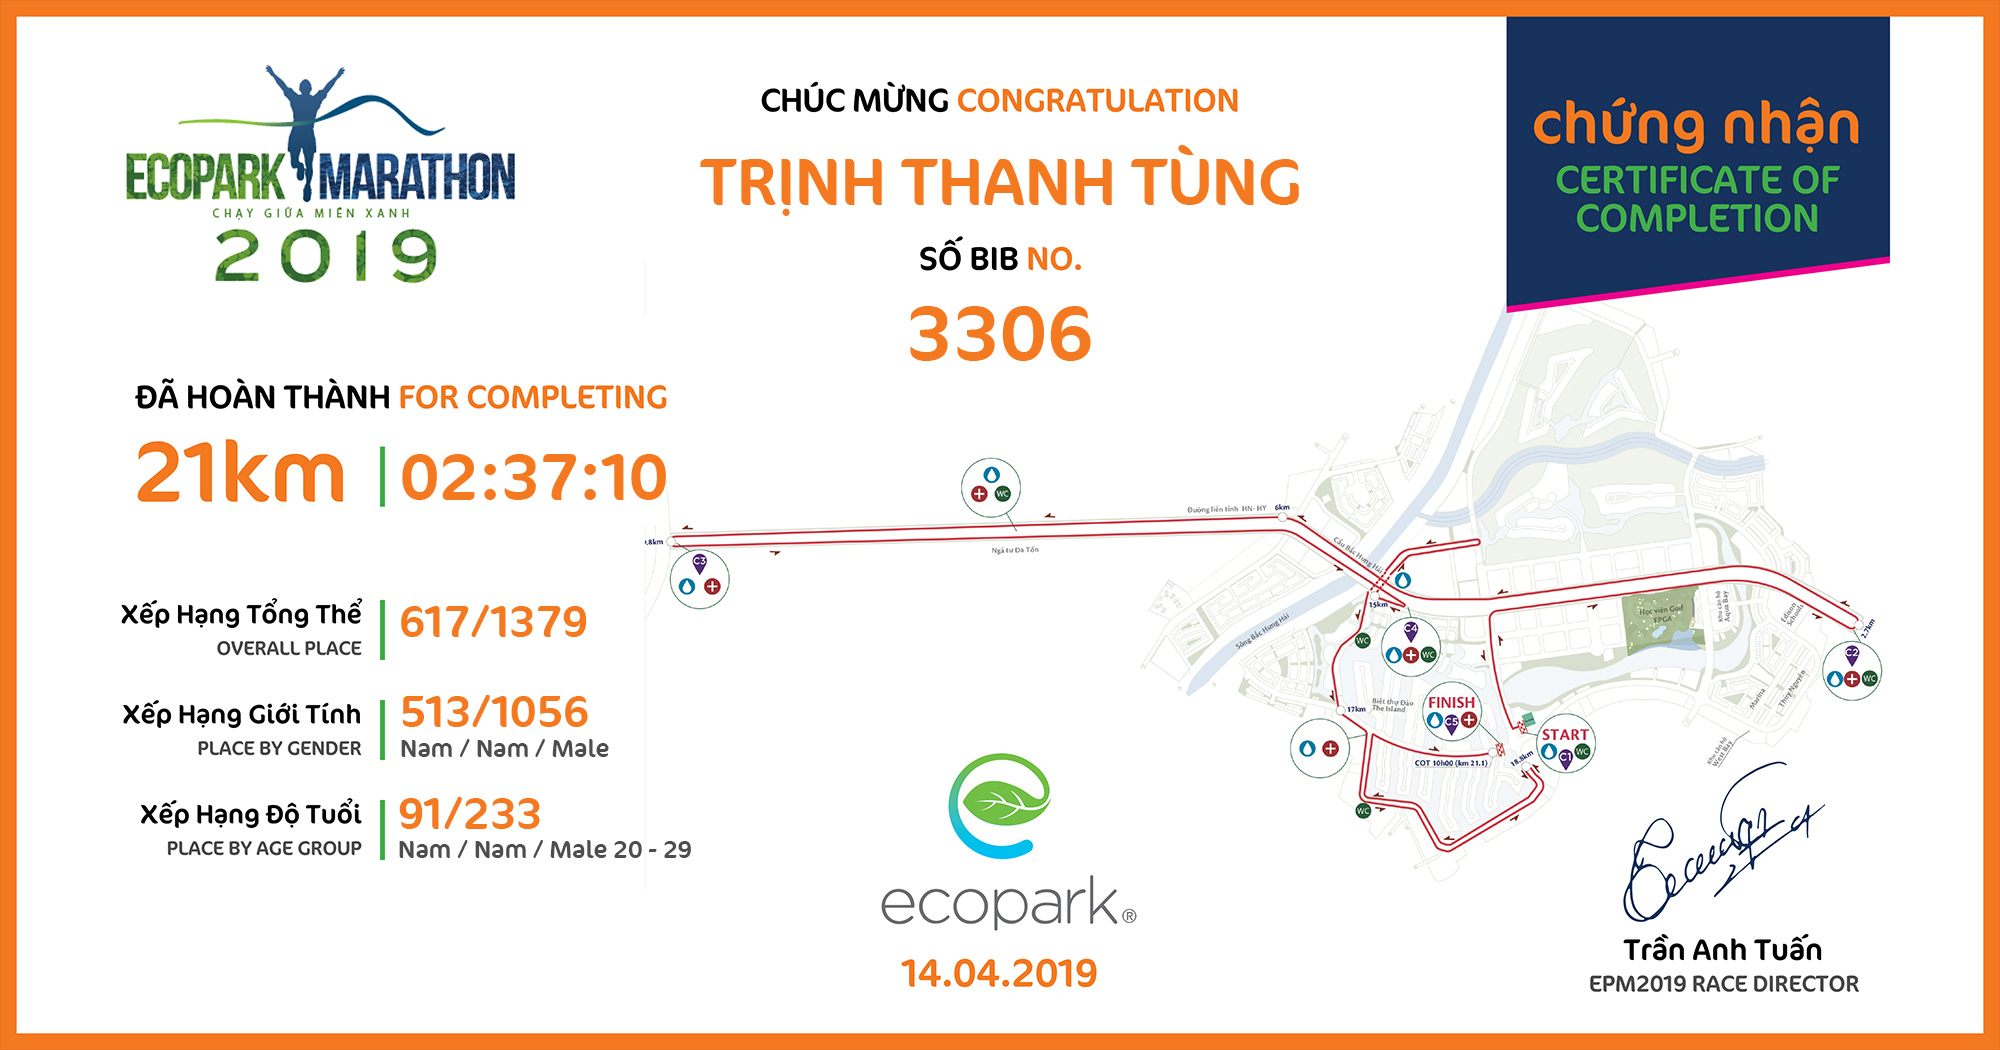 3306 - Trịnh Thanh Tùng